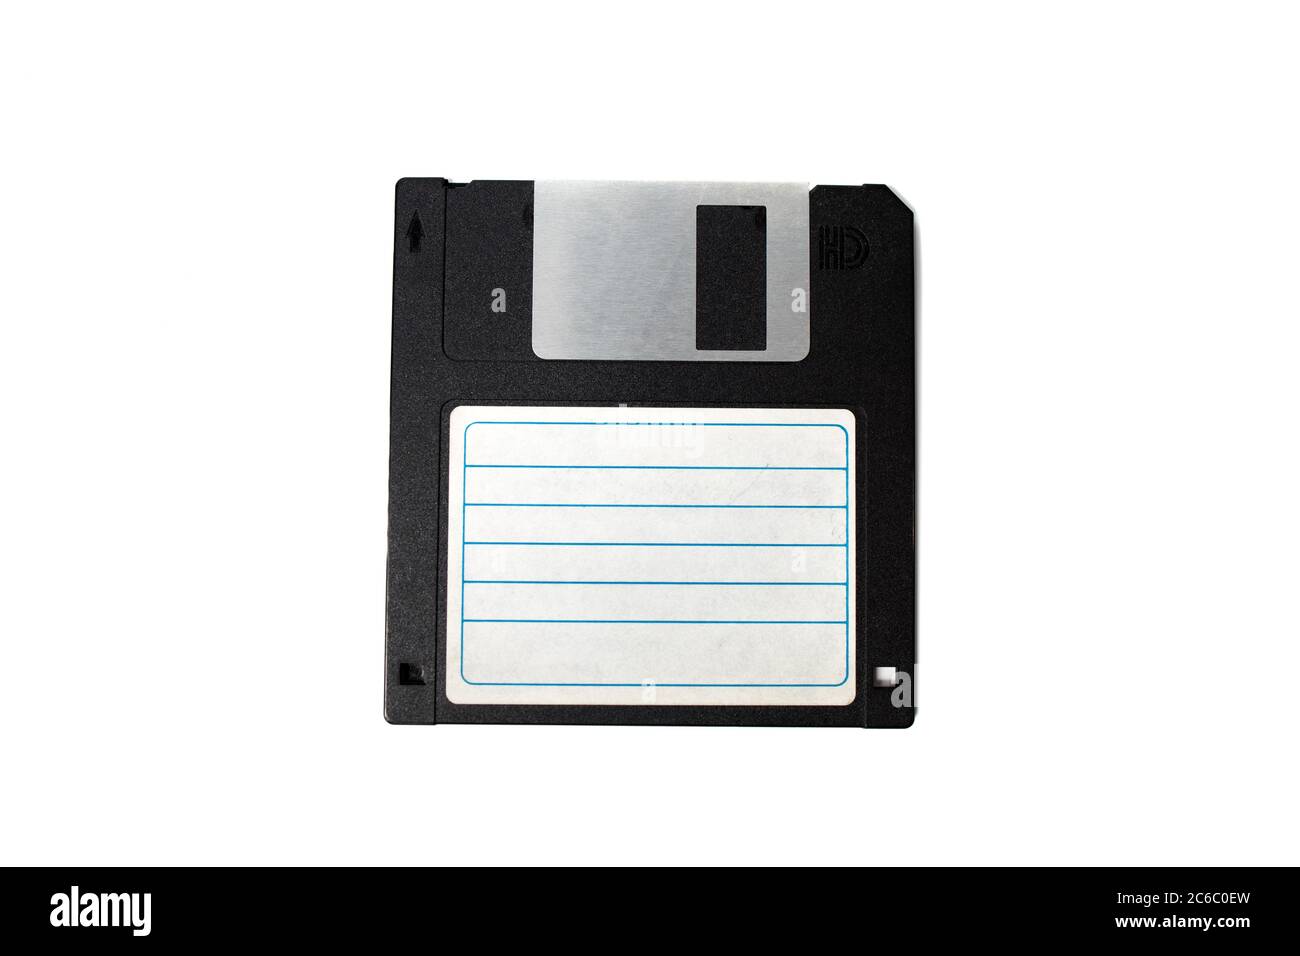 Gros plan sur une disquette de 3.5 pouces. Articles d'ordinateur vintage. Rétro. Banque D'Images